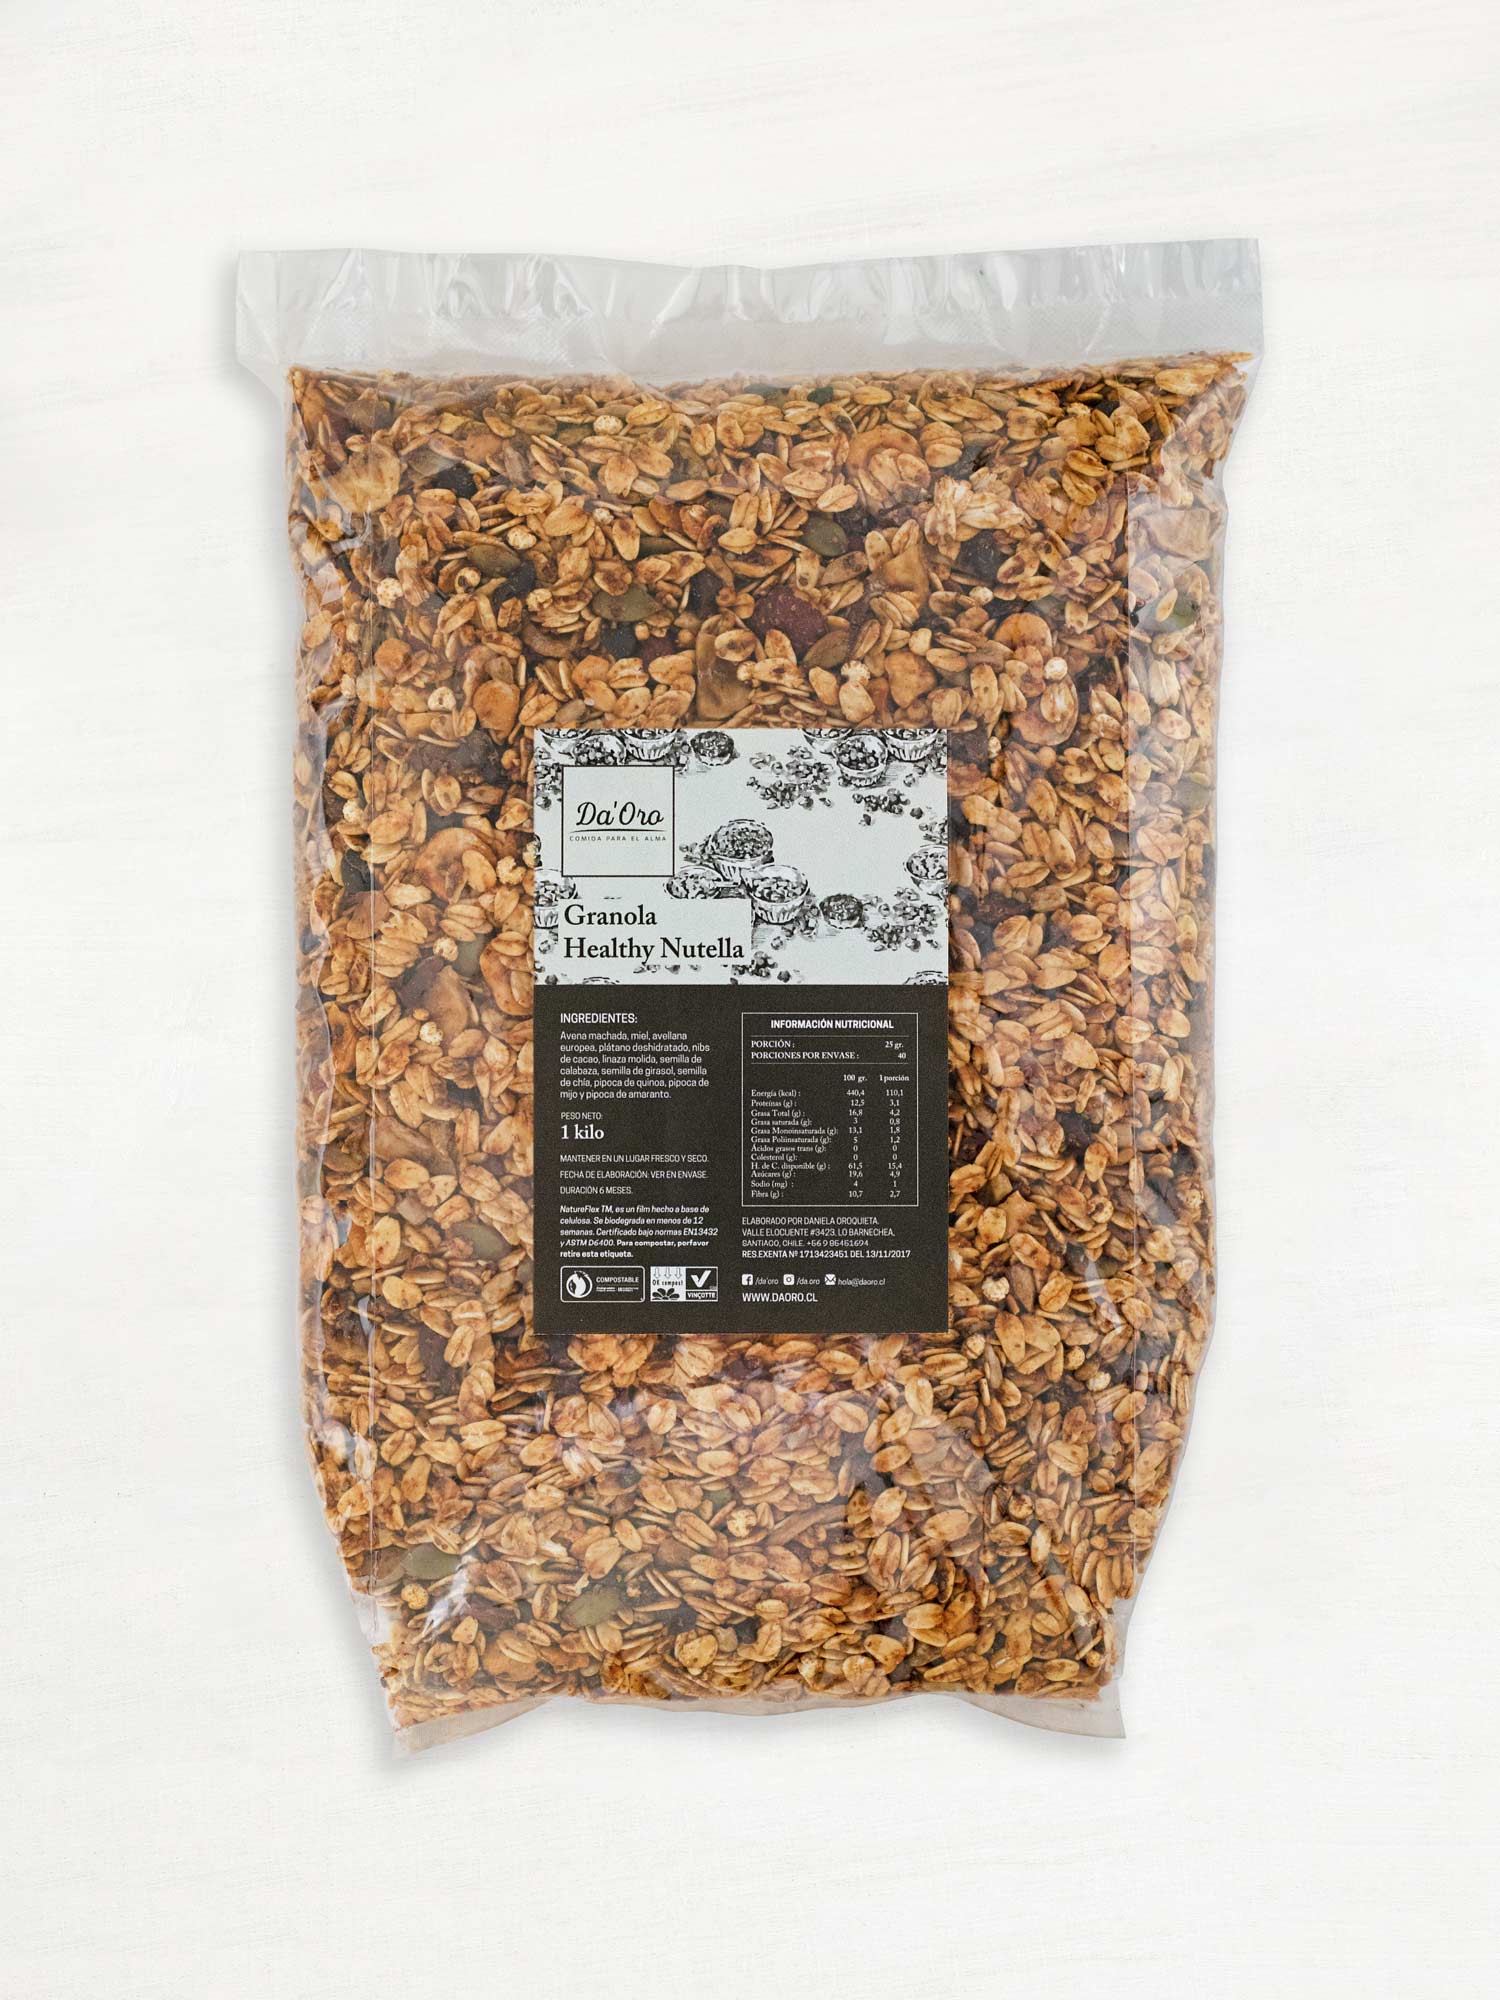 Bolsa de granola healthy nutella 1 kilo Da’Oro